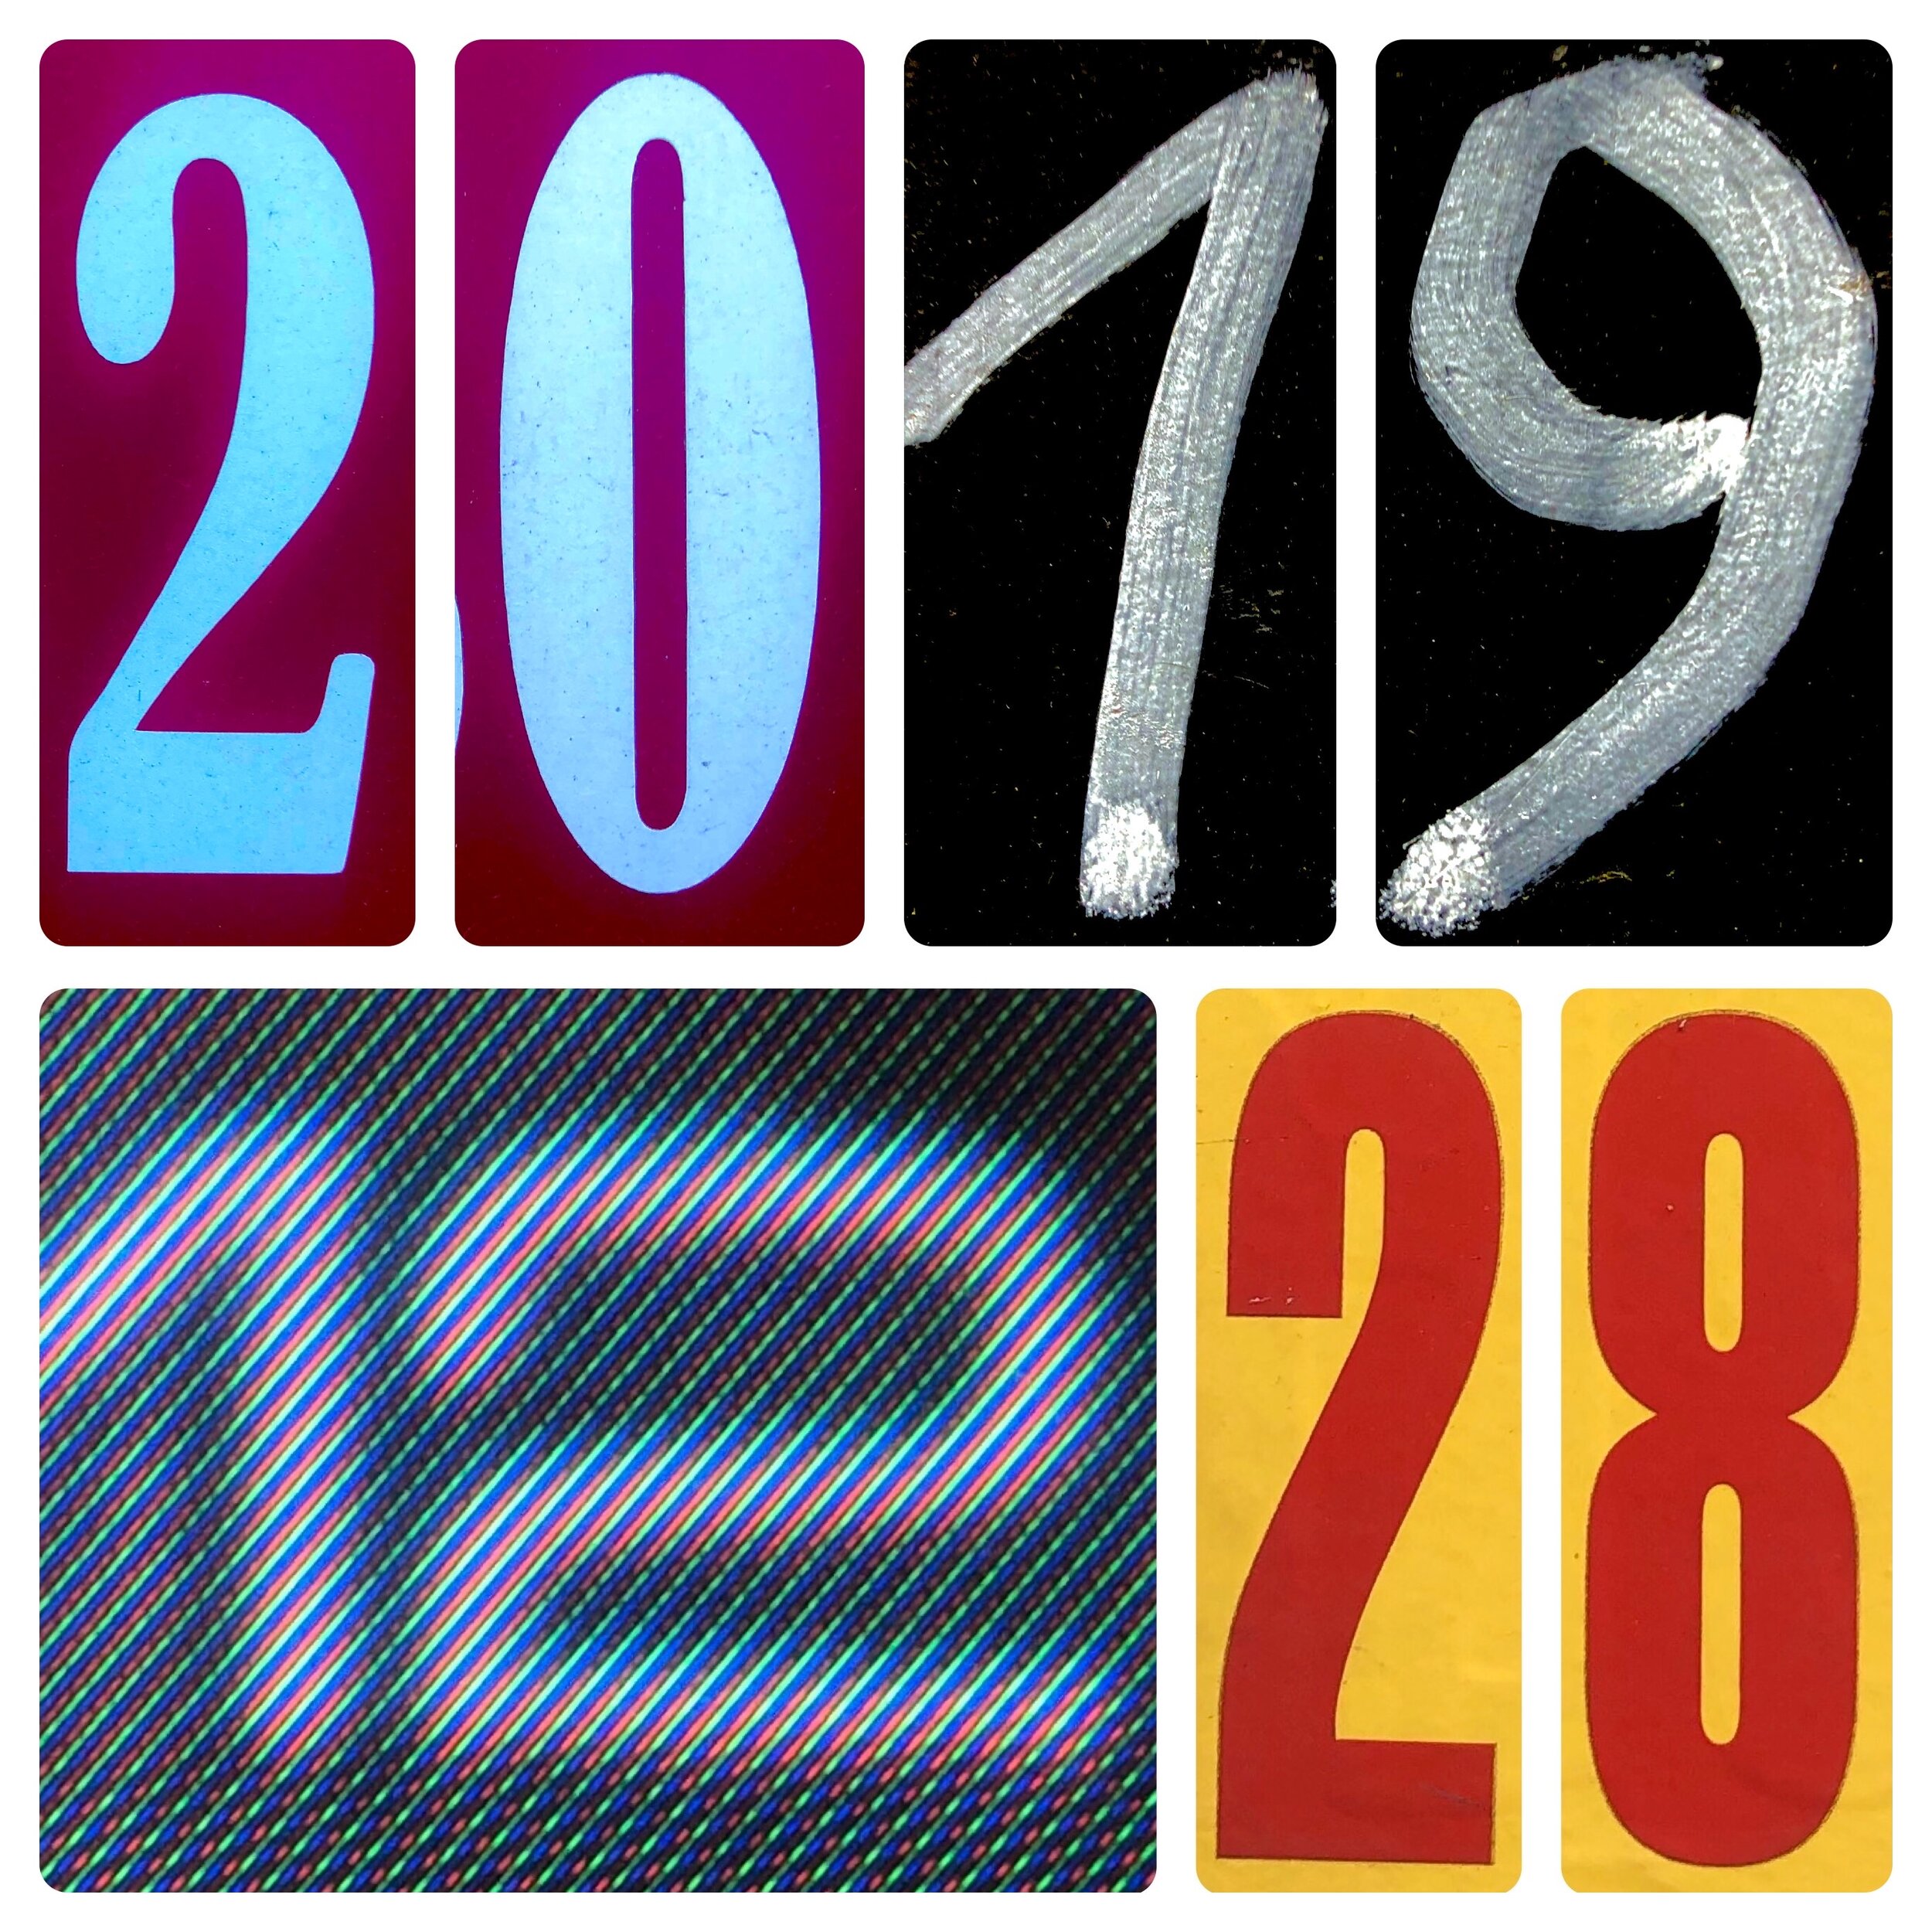 2019-12-28.JPG